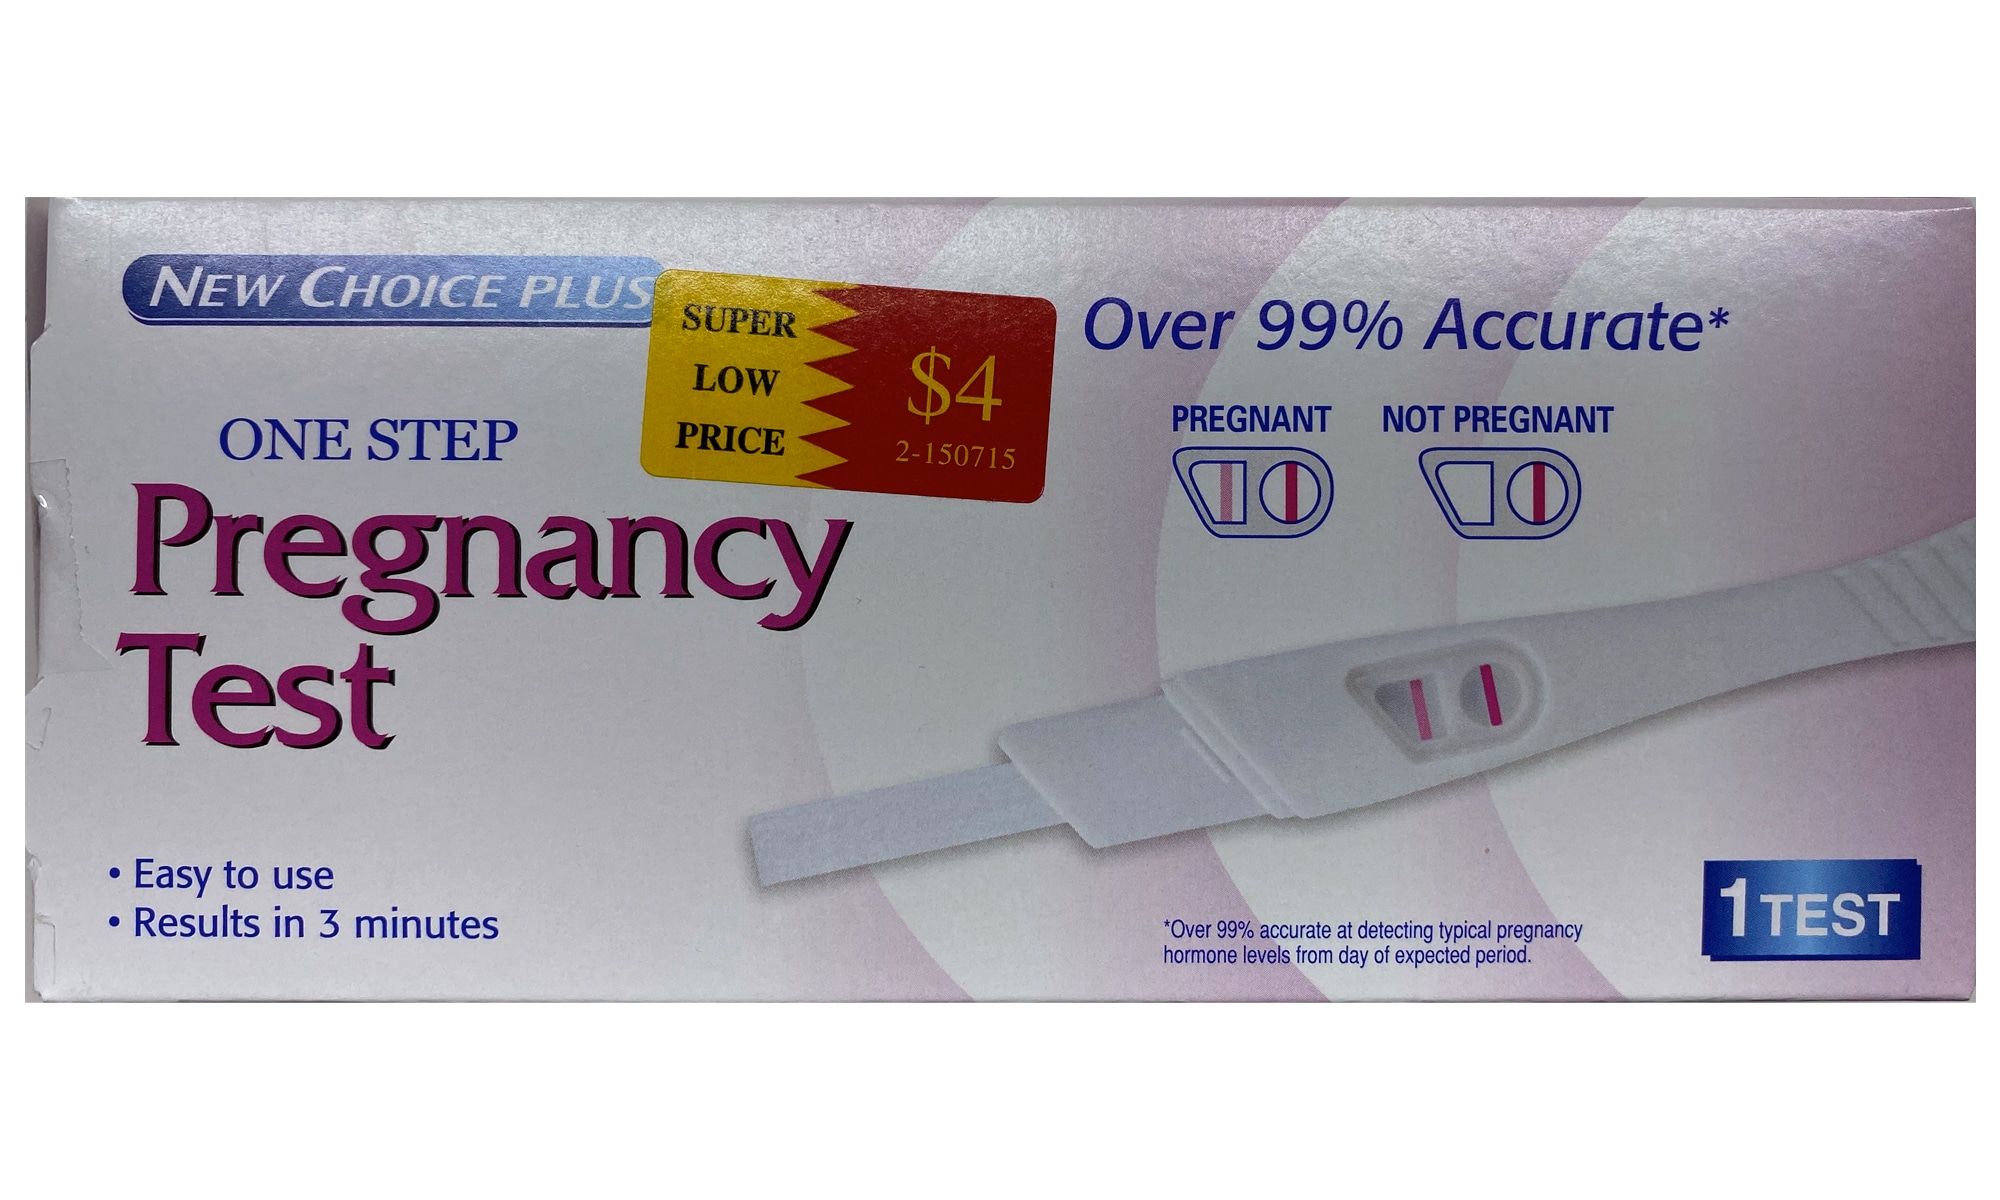 How do I get a New Choice Plus Pregnancy test false positive?